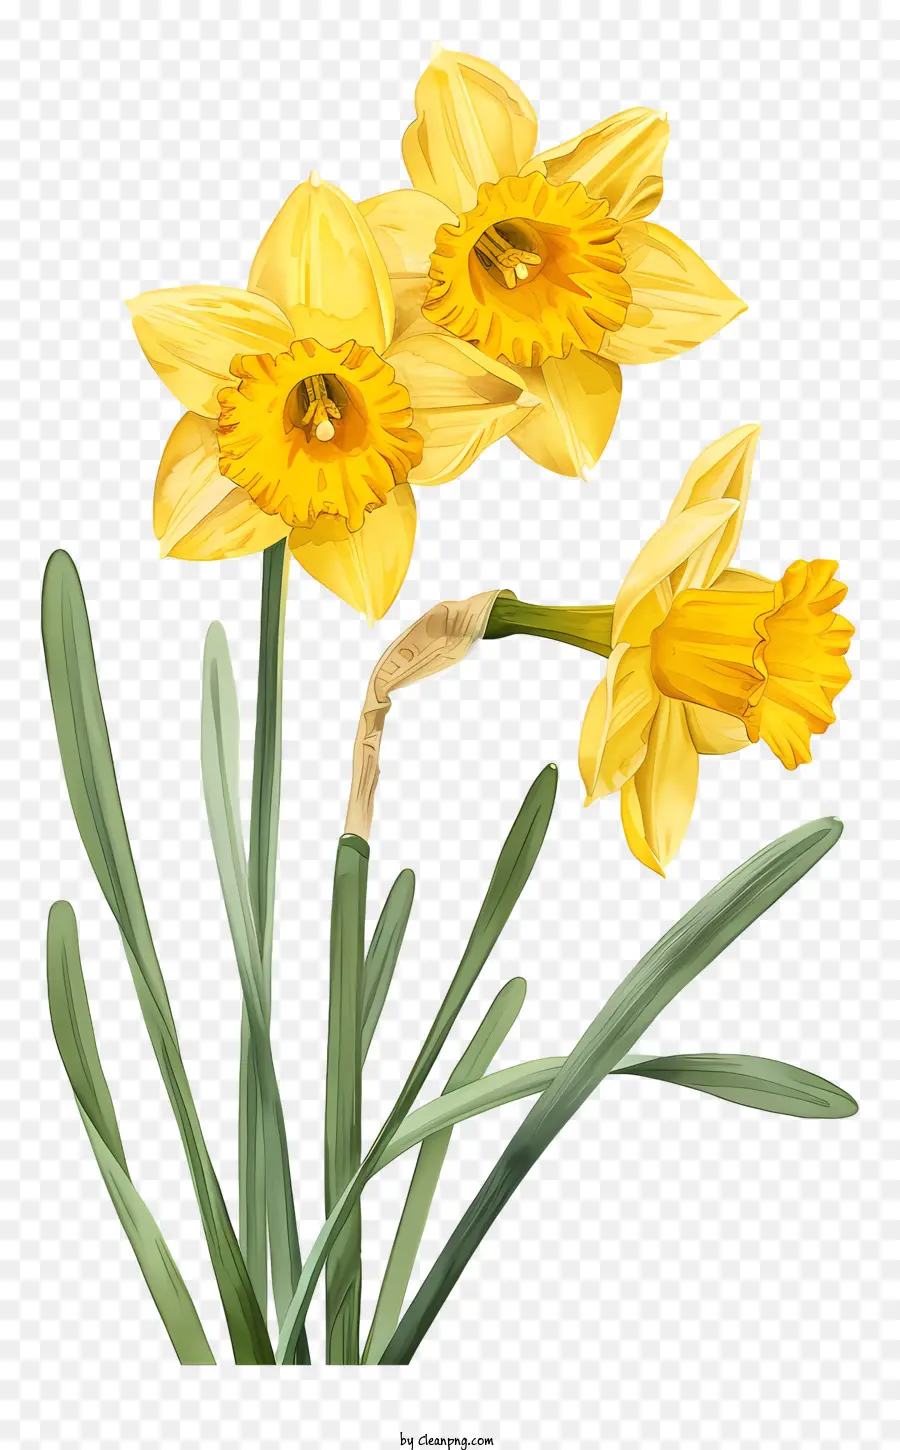 Frühlingsblumen - Gelbe Narzissen in Vase auf schwarzem Hintergrund